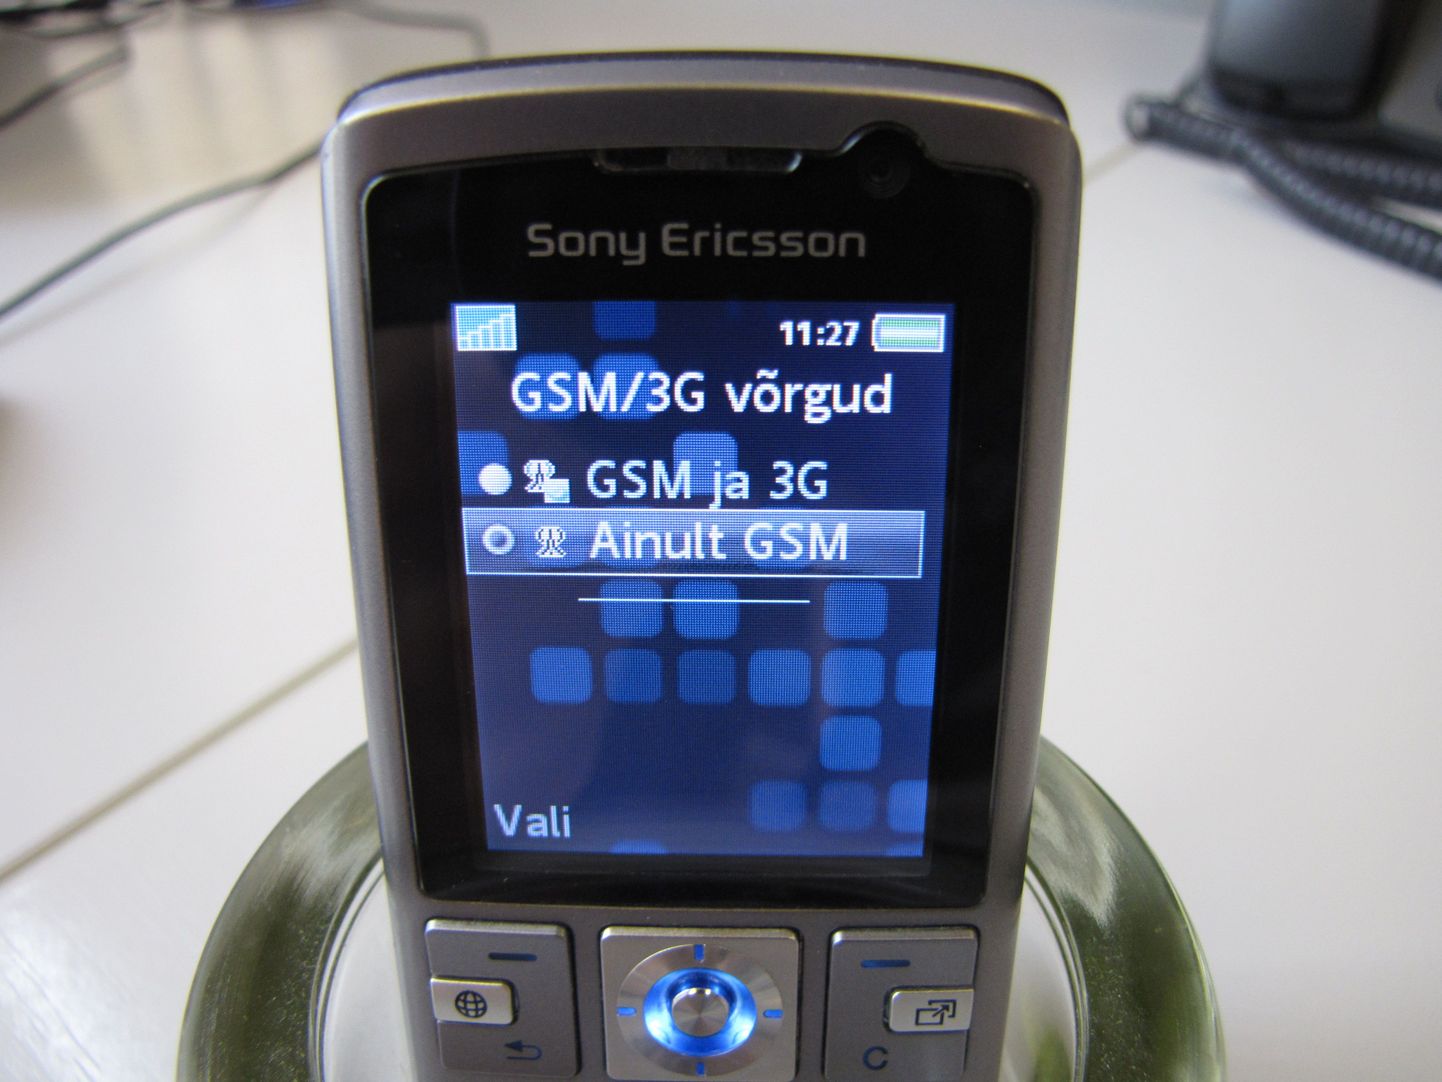 See telefon SonyEricsson K610i osteti 2007. aasta kevadel, foto on tehtud aga nüüd, 2016. aasta sügisel. Toona päris tark telefon töötab endiselt ja võimaldab lisaks GSM-ile valida ka 3G-võrgu.